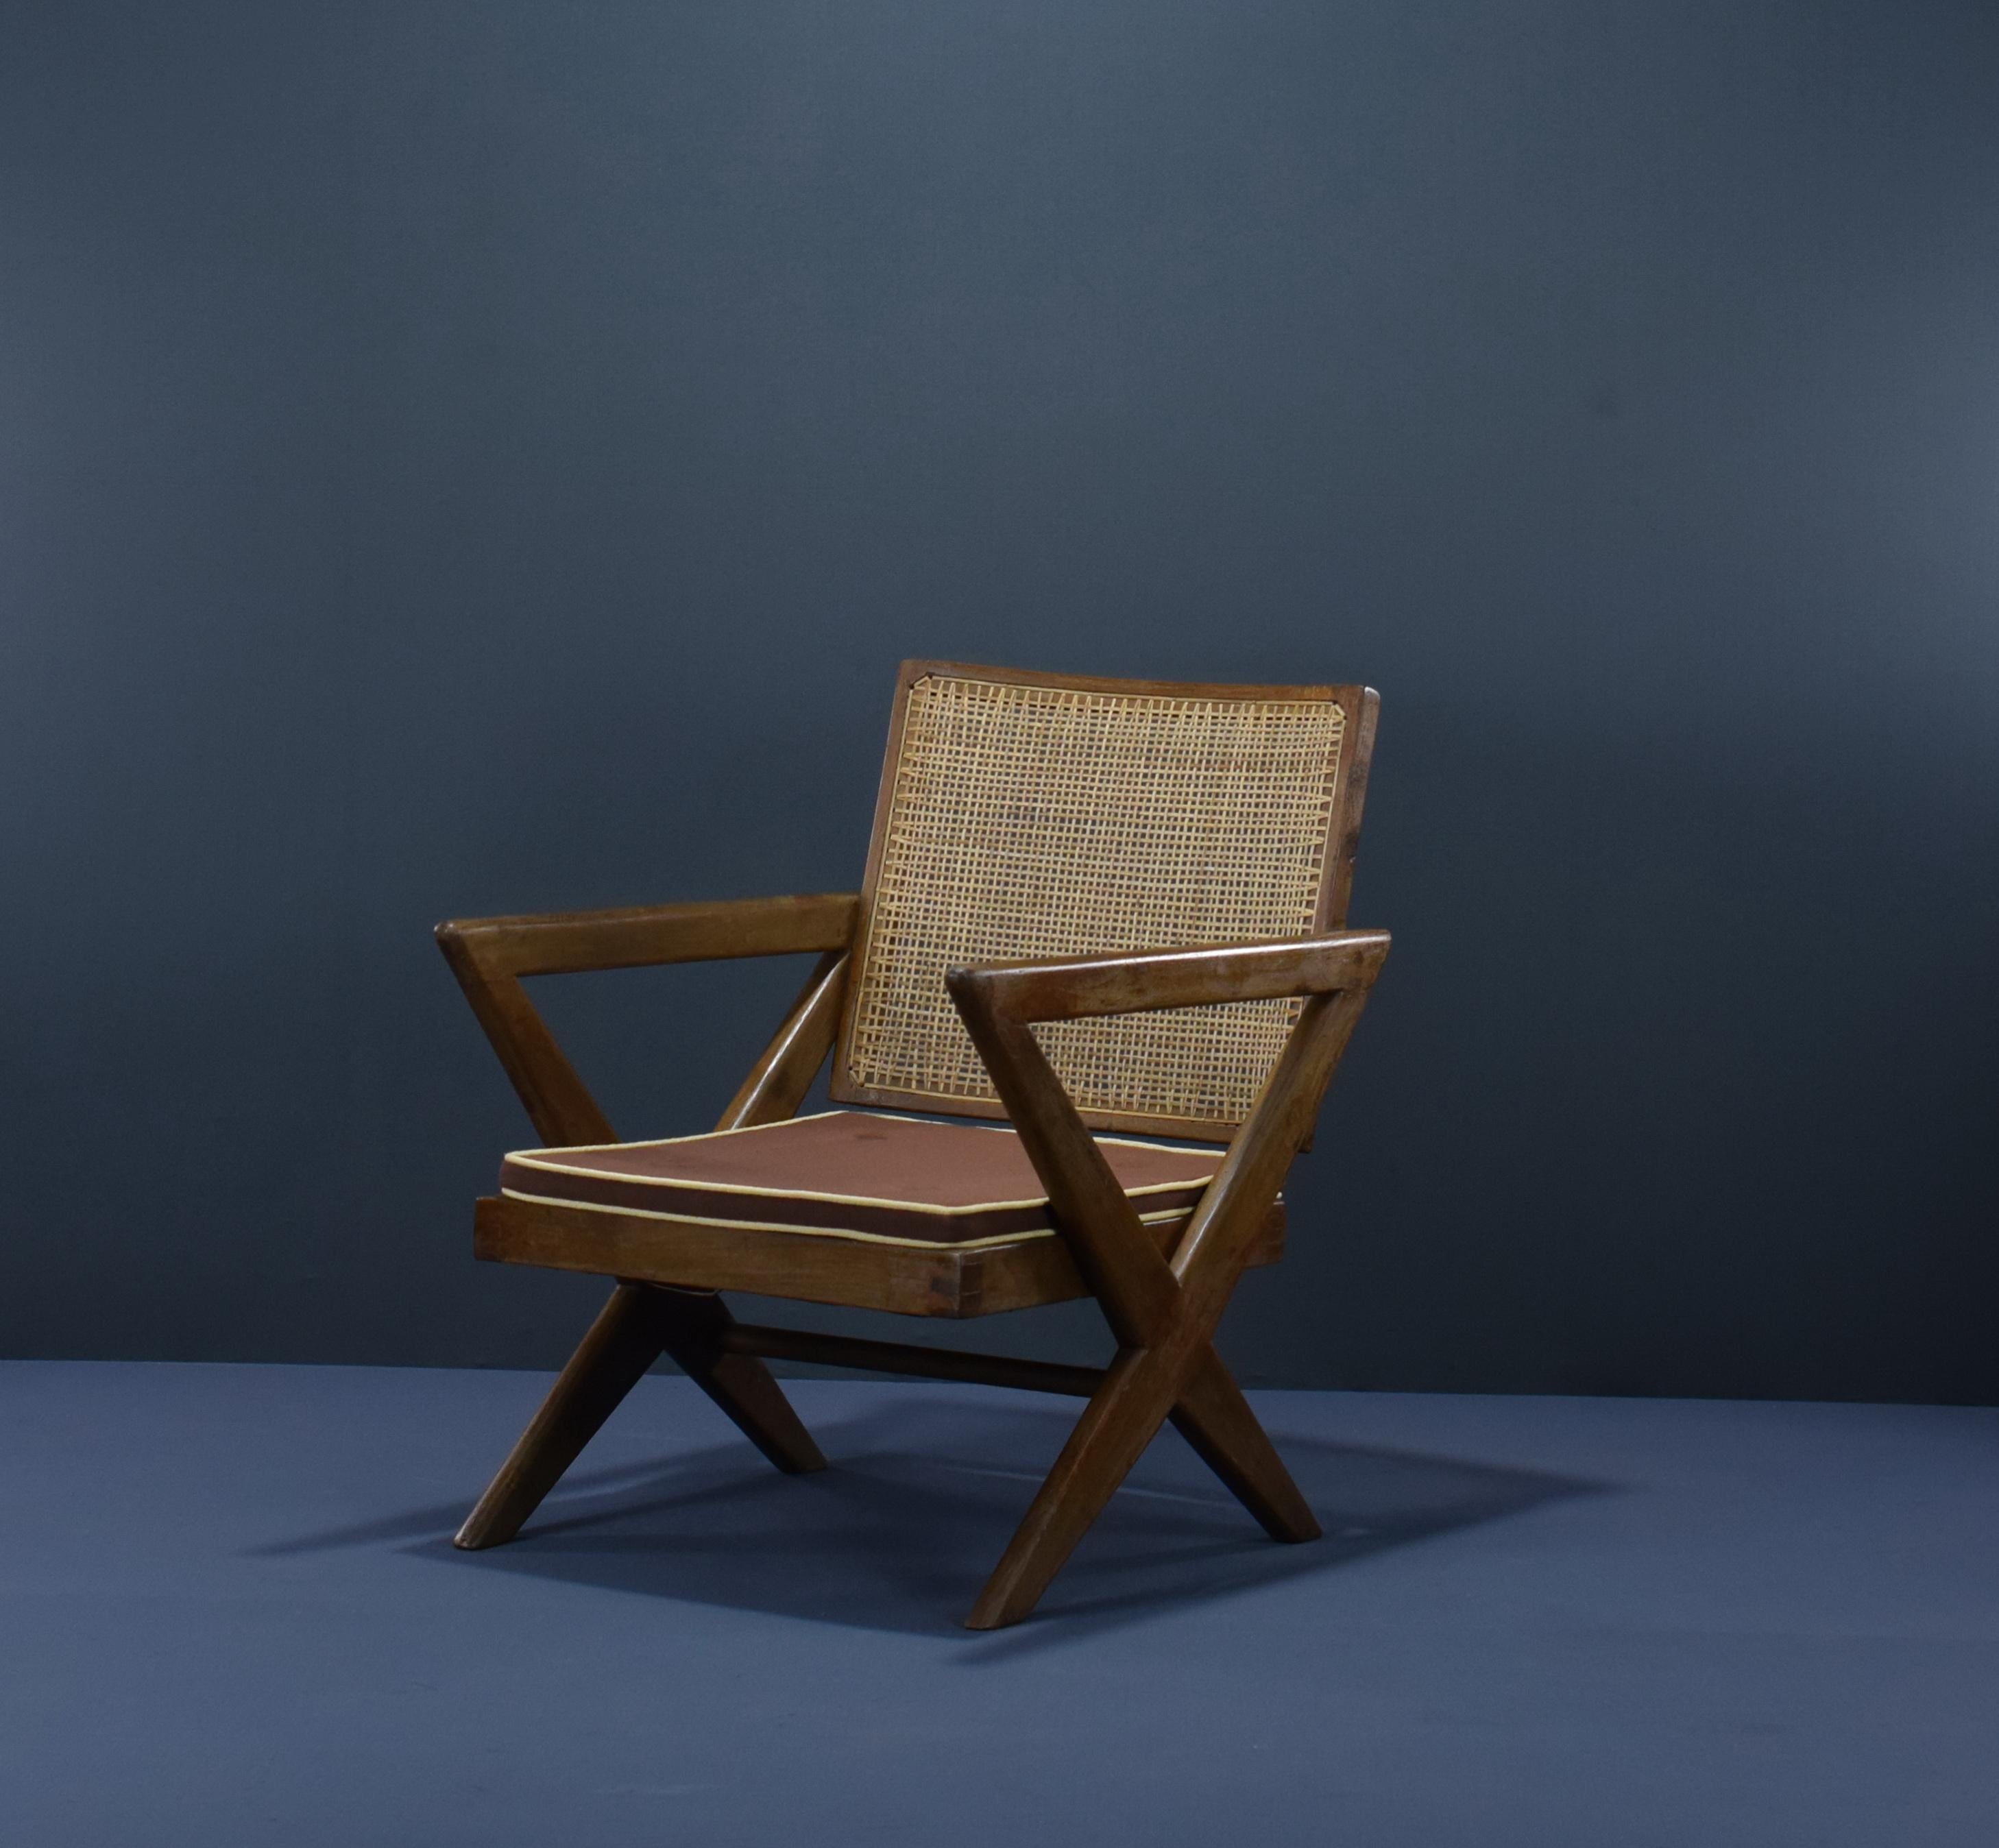 Cet ensemble de deux chaises à pieds en X est absolument fantastique. Les pieds en forme de X sont caractéristiques du design de Pierre Jeannerets pour Chandigarh et vous pouvez les voir sur de nombreux objets. Il existe un type similaire avec des